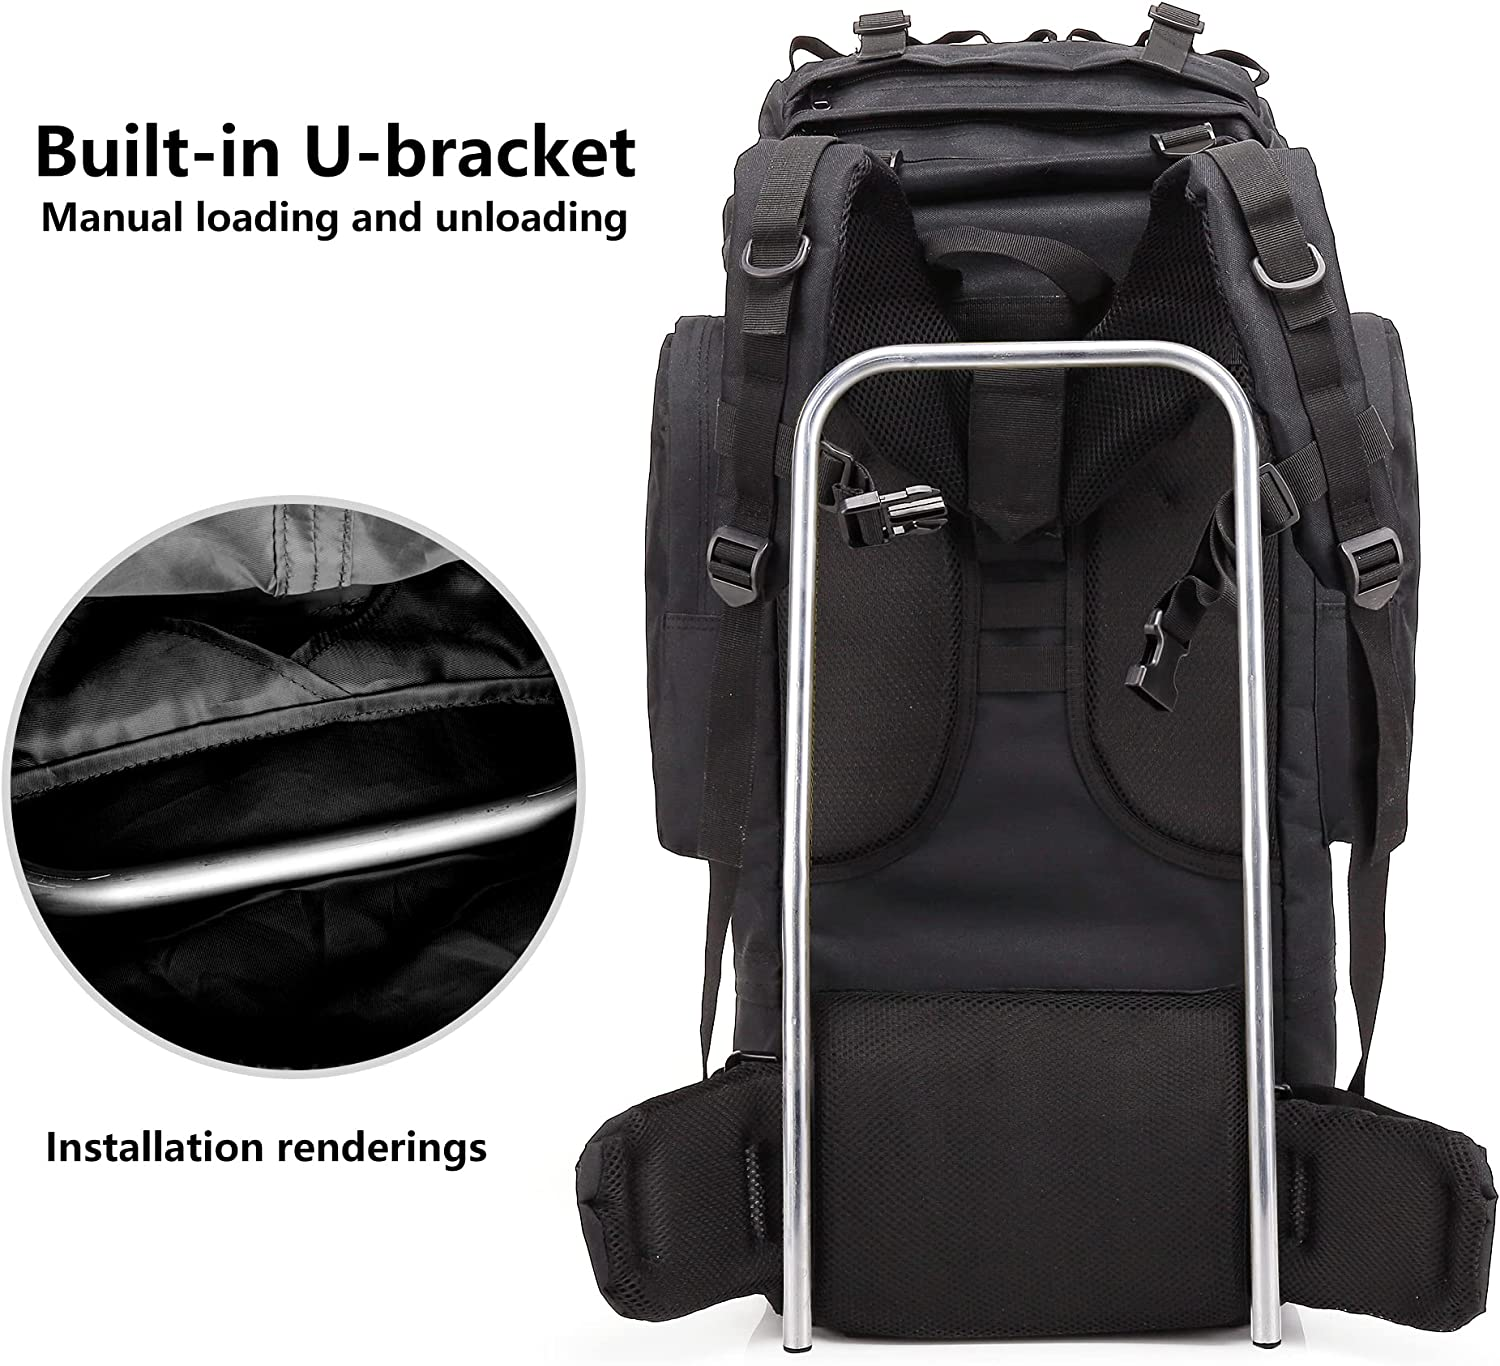 HARDLAND 65L Outdoor Backpack Tactical Climbing Hiking Sport Shoulder Bag